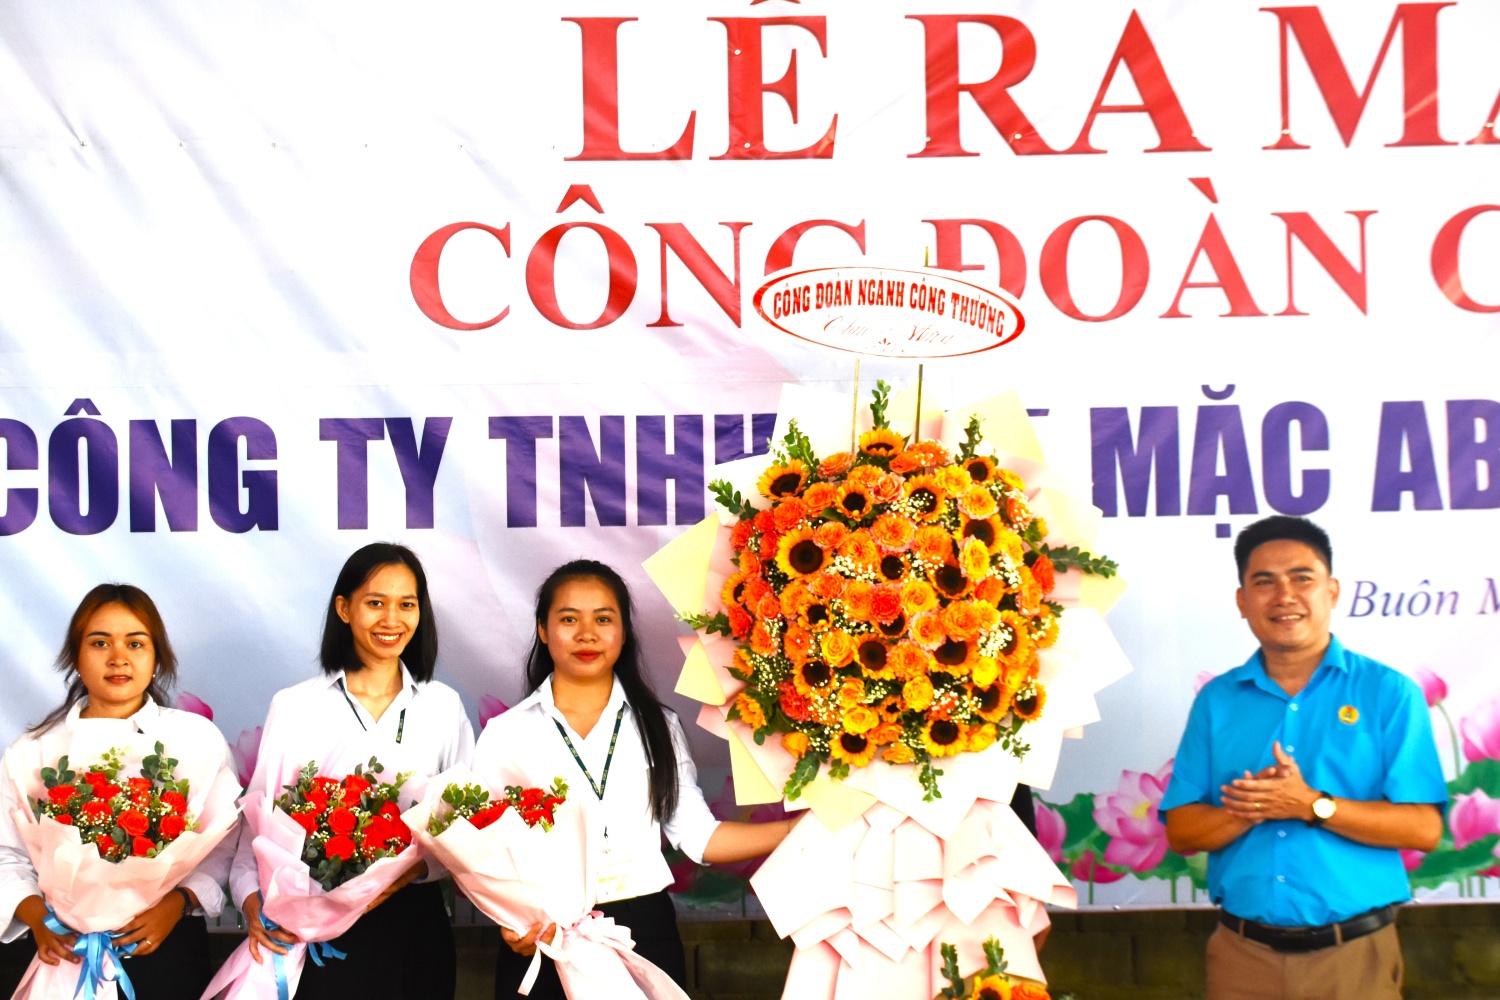 Công đoàn ngành Công Thương tỉnh Đắk Lắk tổ chức chức Lễ ra mắt công đoàn cơ sở Công ty TNHH May mặc Able Joy Đắk Lắk, kết nạp 767 CNLĐ vào tổ chức công đoàn